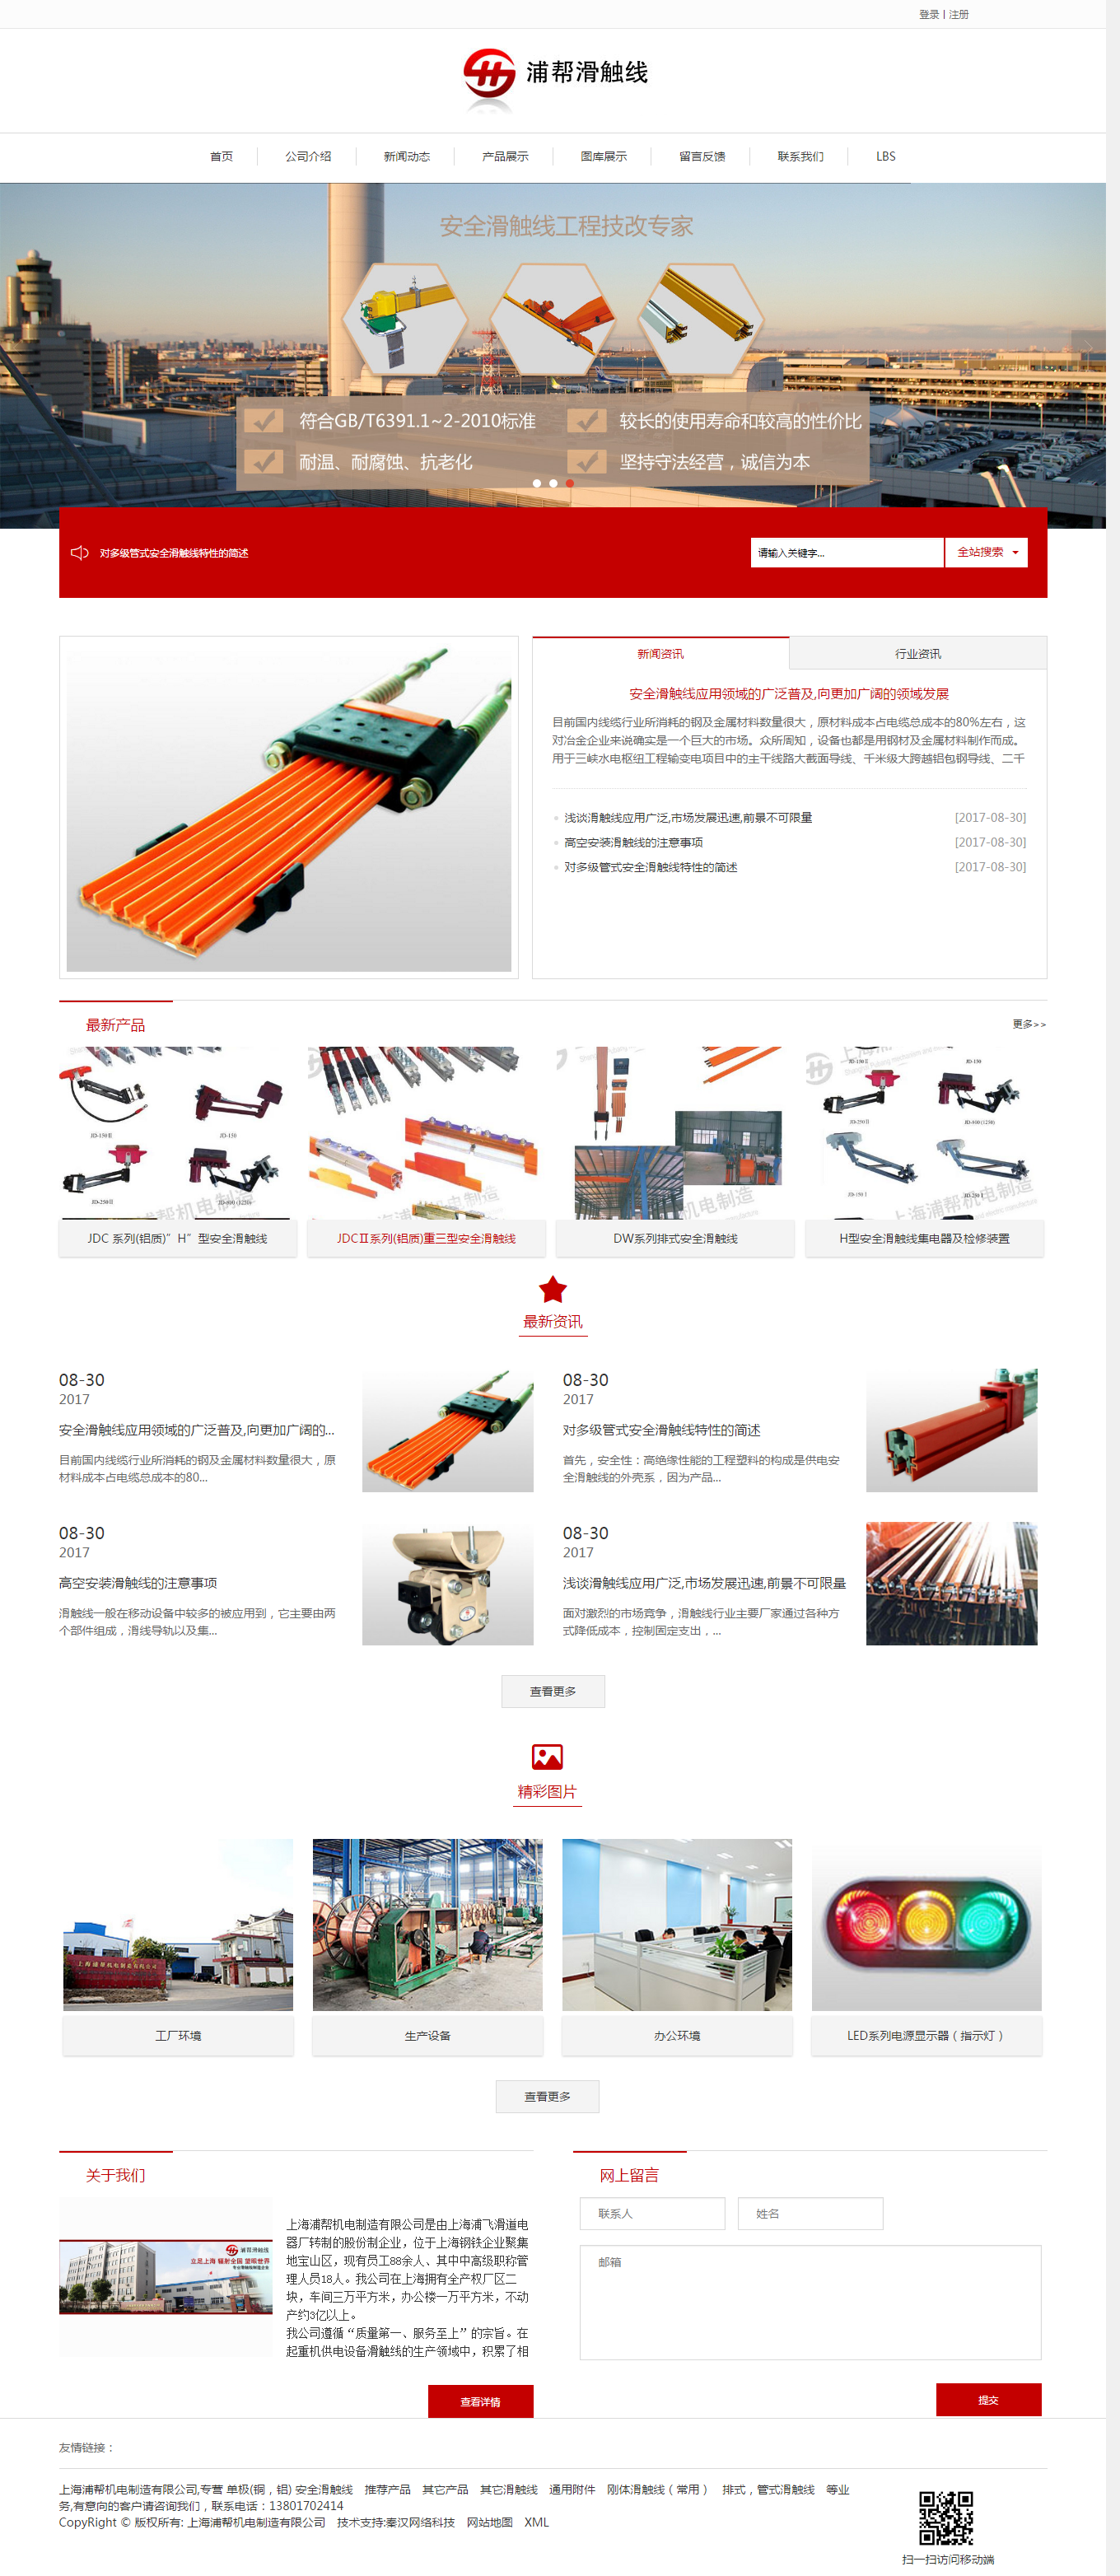 上海浦帮机电制造有限公司，上海滑触线厂家，上海指示灯厂家，上海滑触线，安全滑触线，钢体滑触线厂家.png